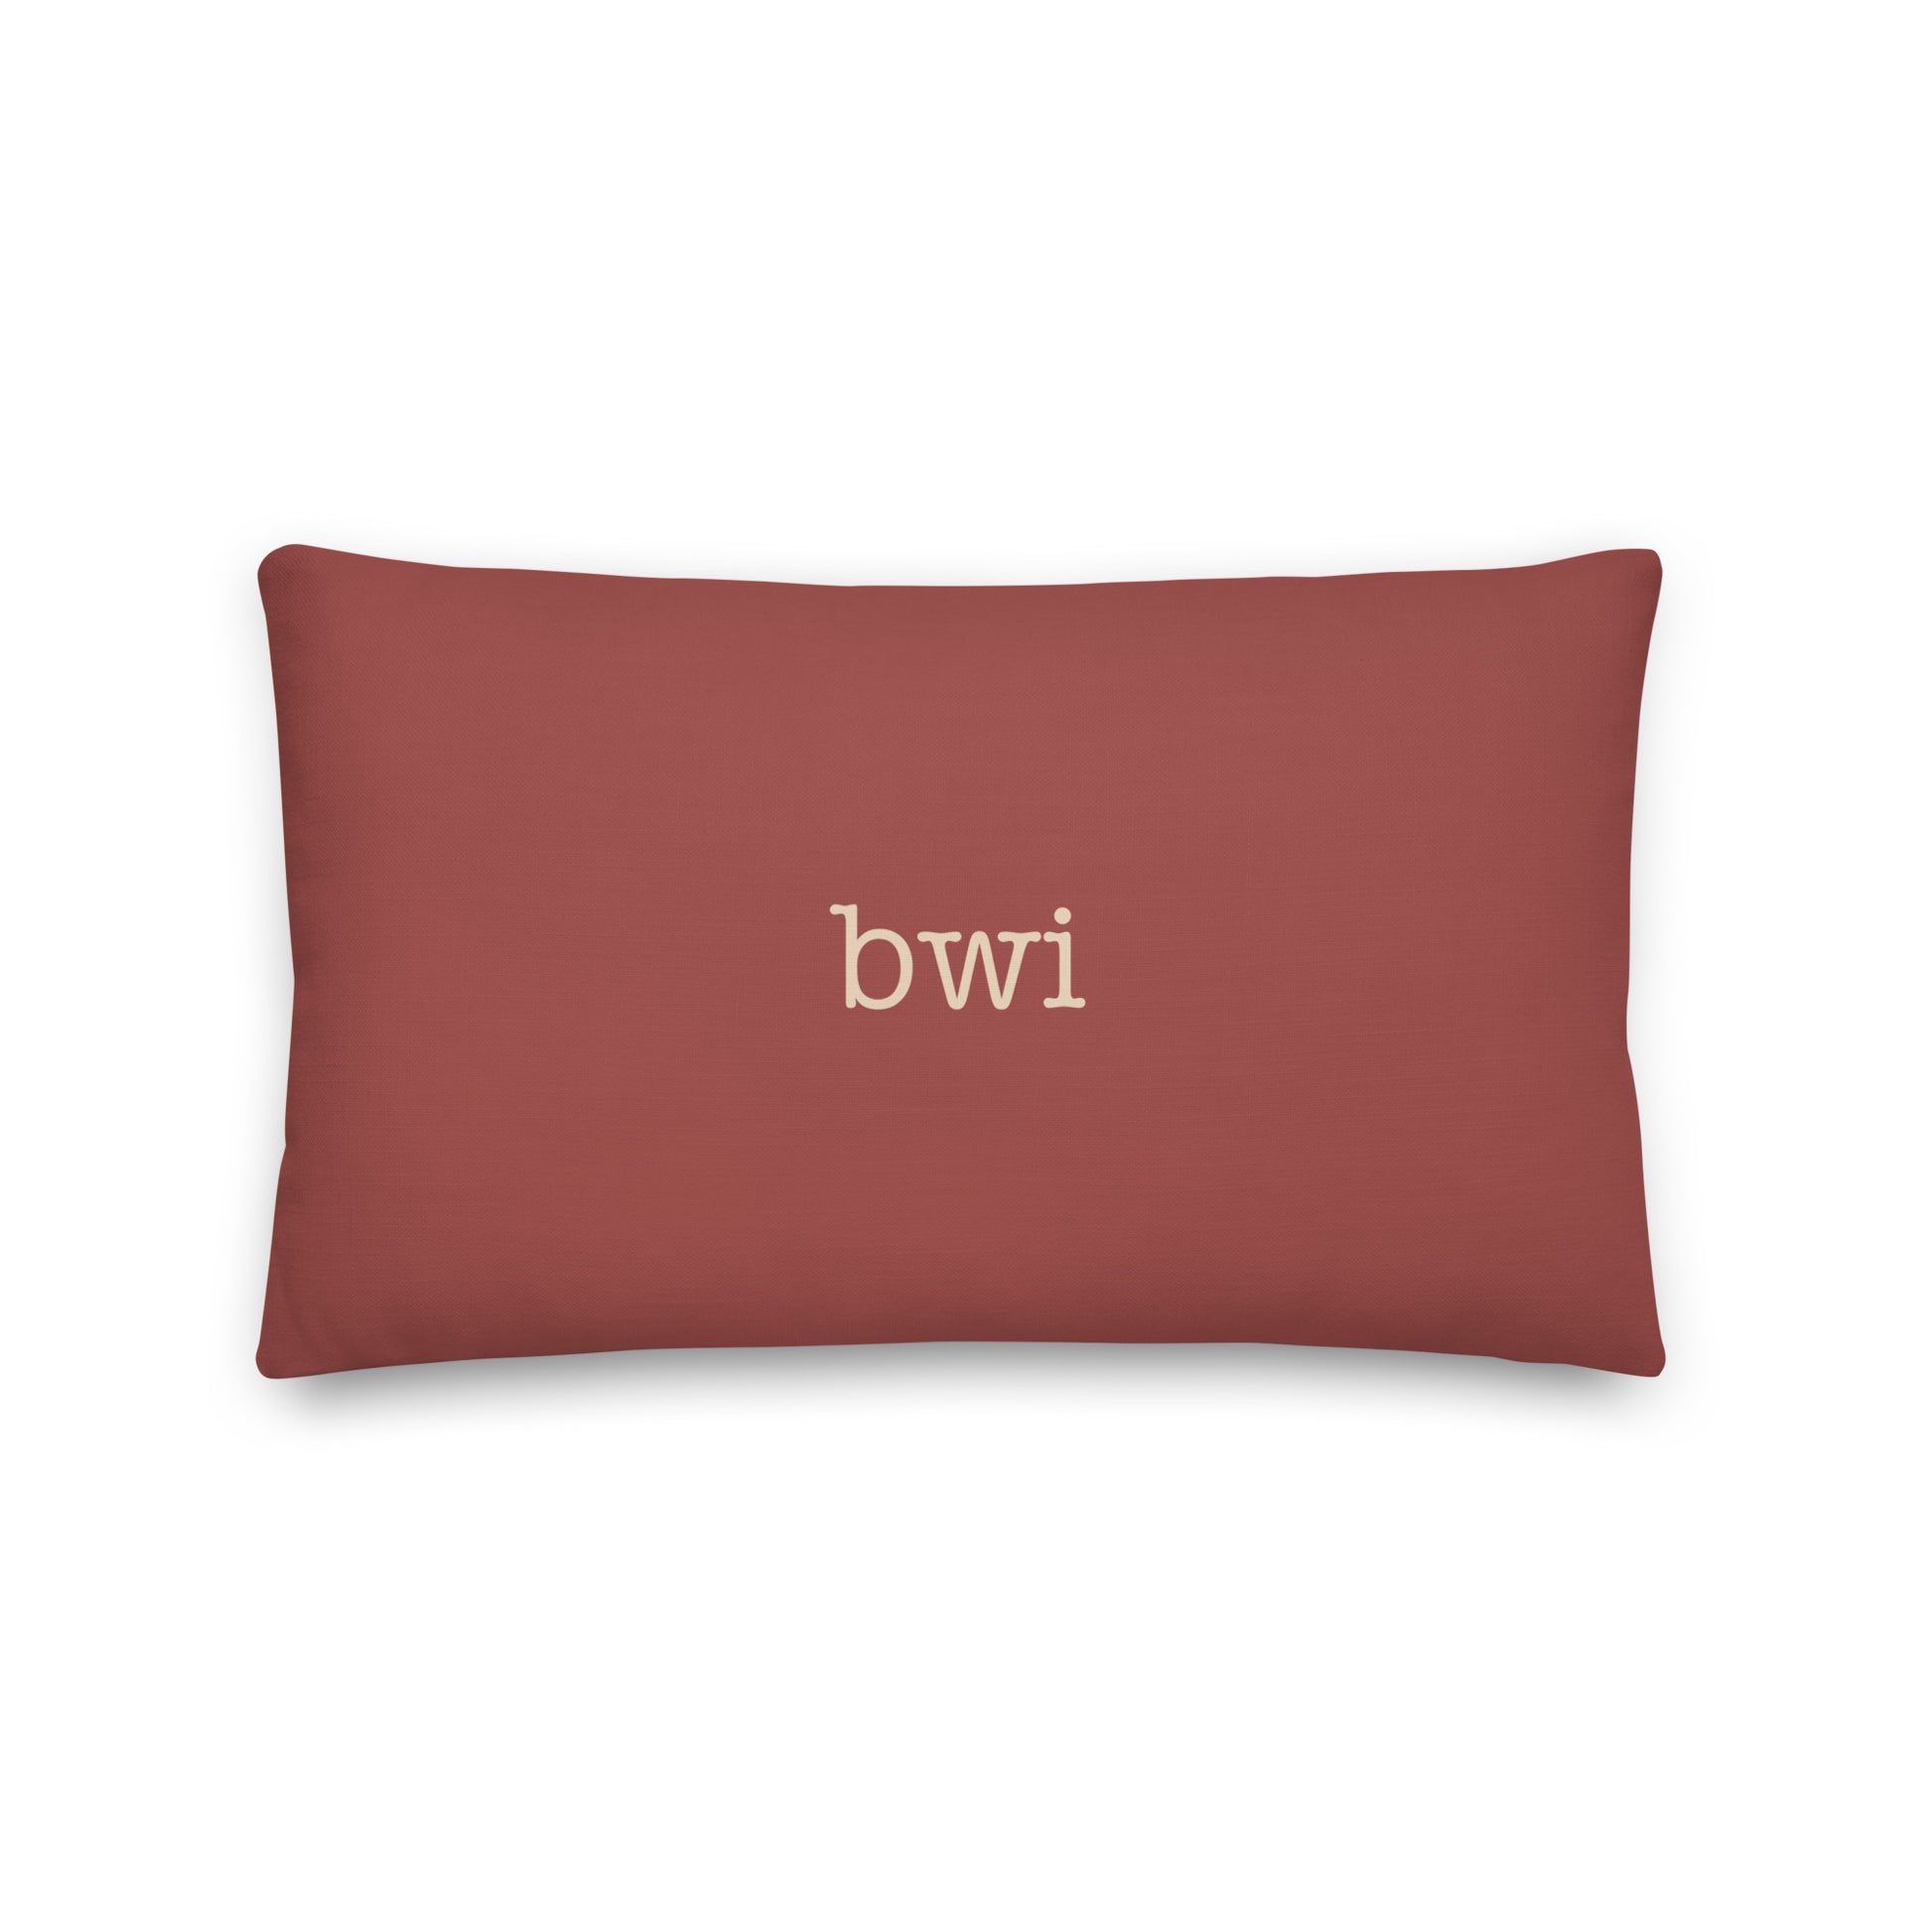 Typewriter Pillow - Terra Cotta • BWI Baltimore • YHM Designs - Image 02